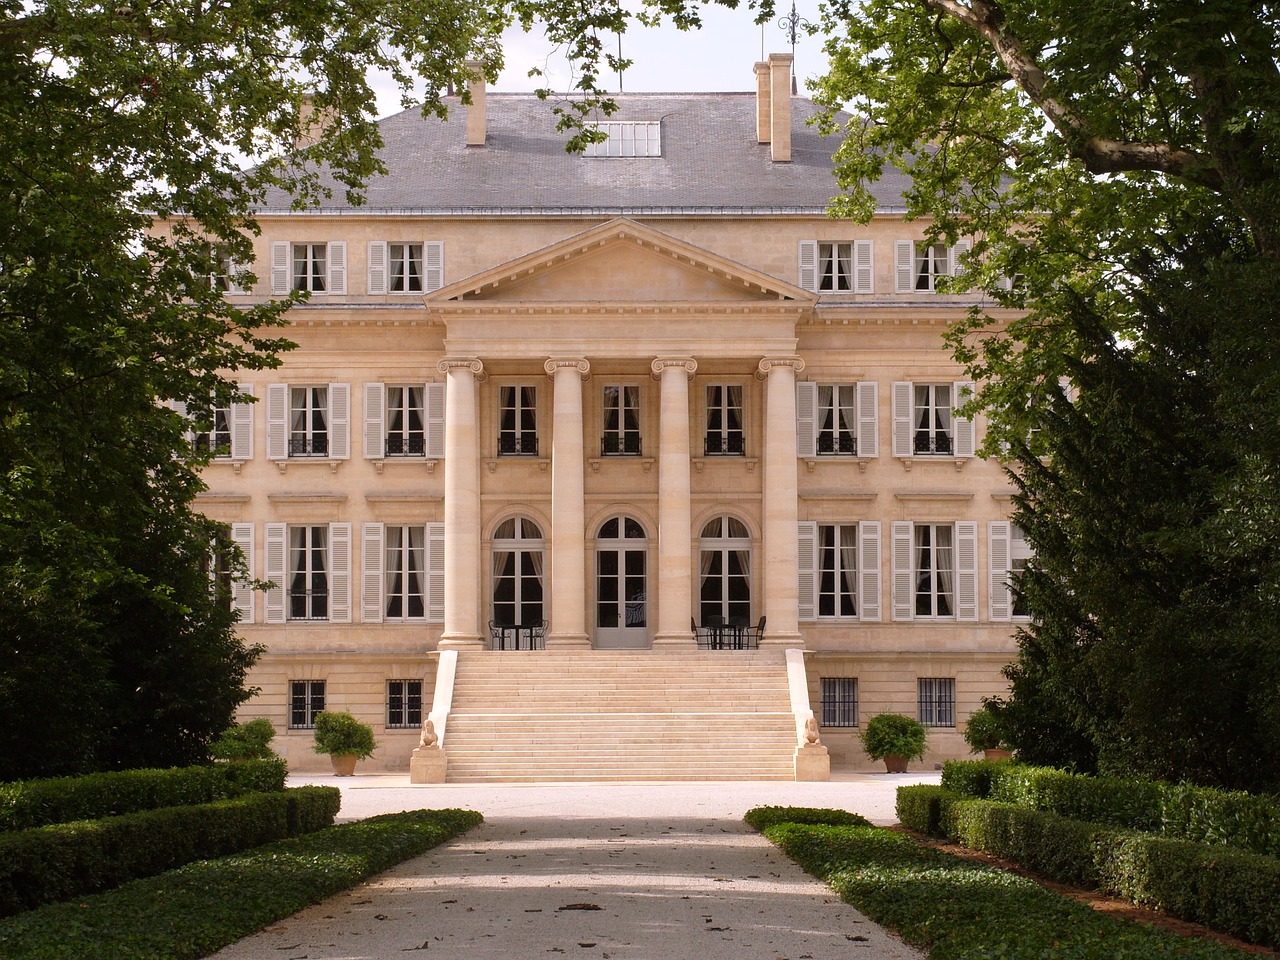 Château Margaux vineyard